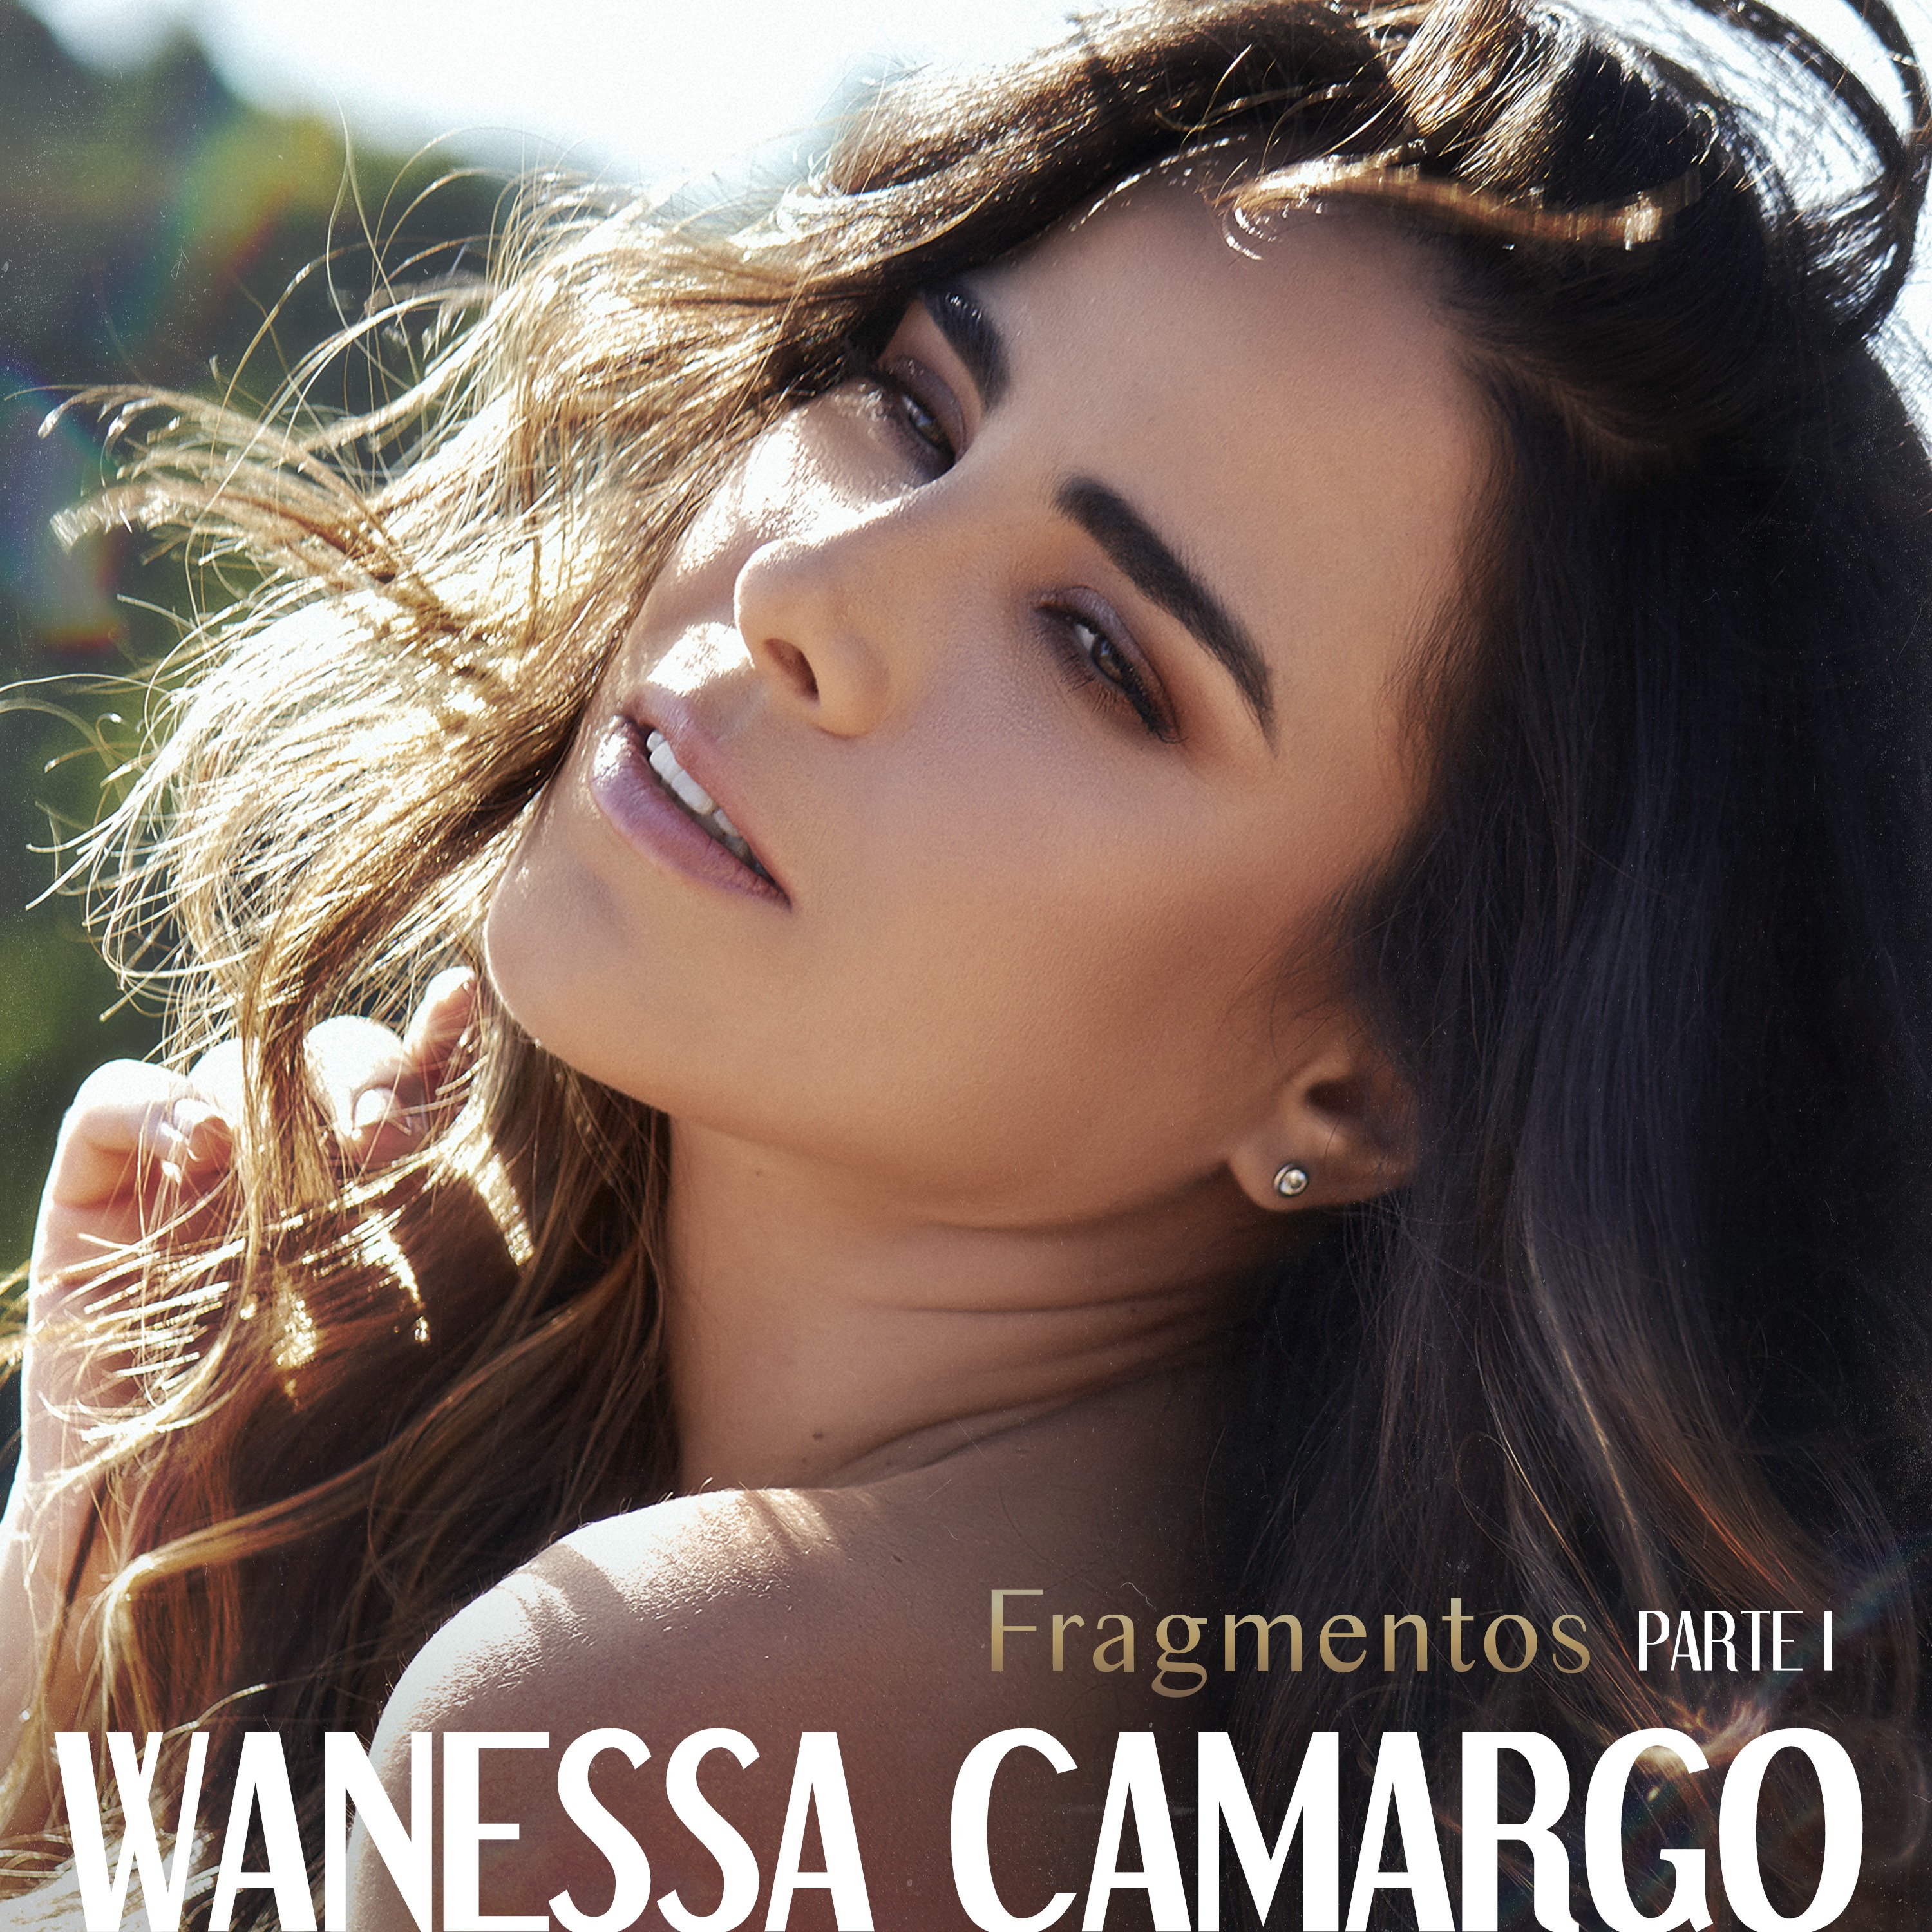 Wanessa Camargo comemora 20 anos de carreira com projeto que contará sua trajetória